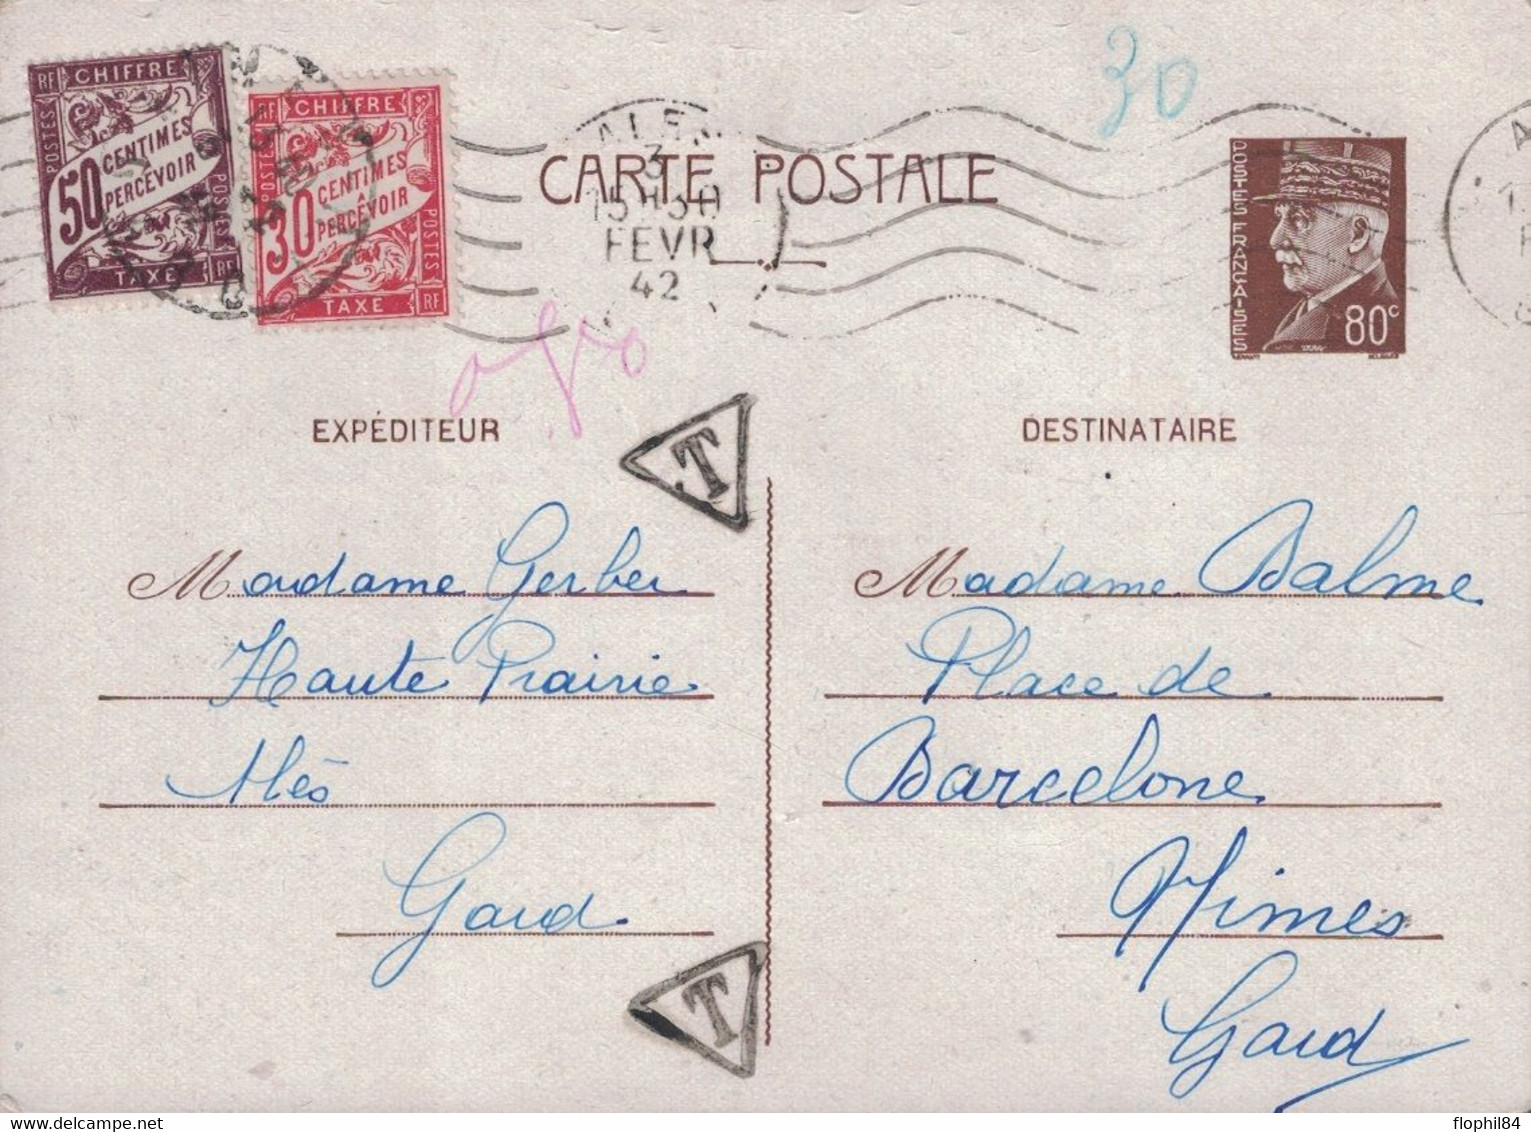 GARD - ALES - PETAIN - ENTIER POSTAL A 80c POUR NIMES - TAXE BANDEROLE 50+30 A L'ARRIVEE A NIMES - LE 2 FEVRIER 1942. - 1859-1959 Lettres & Documents